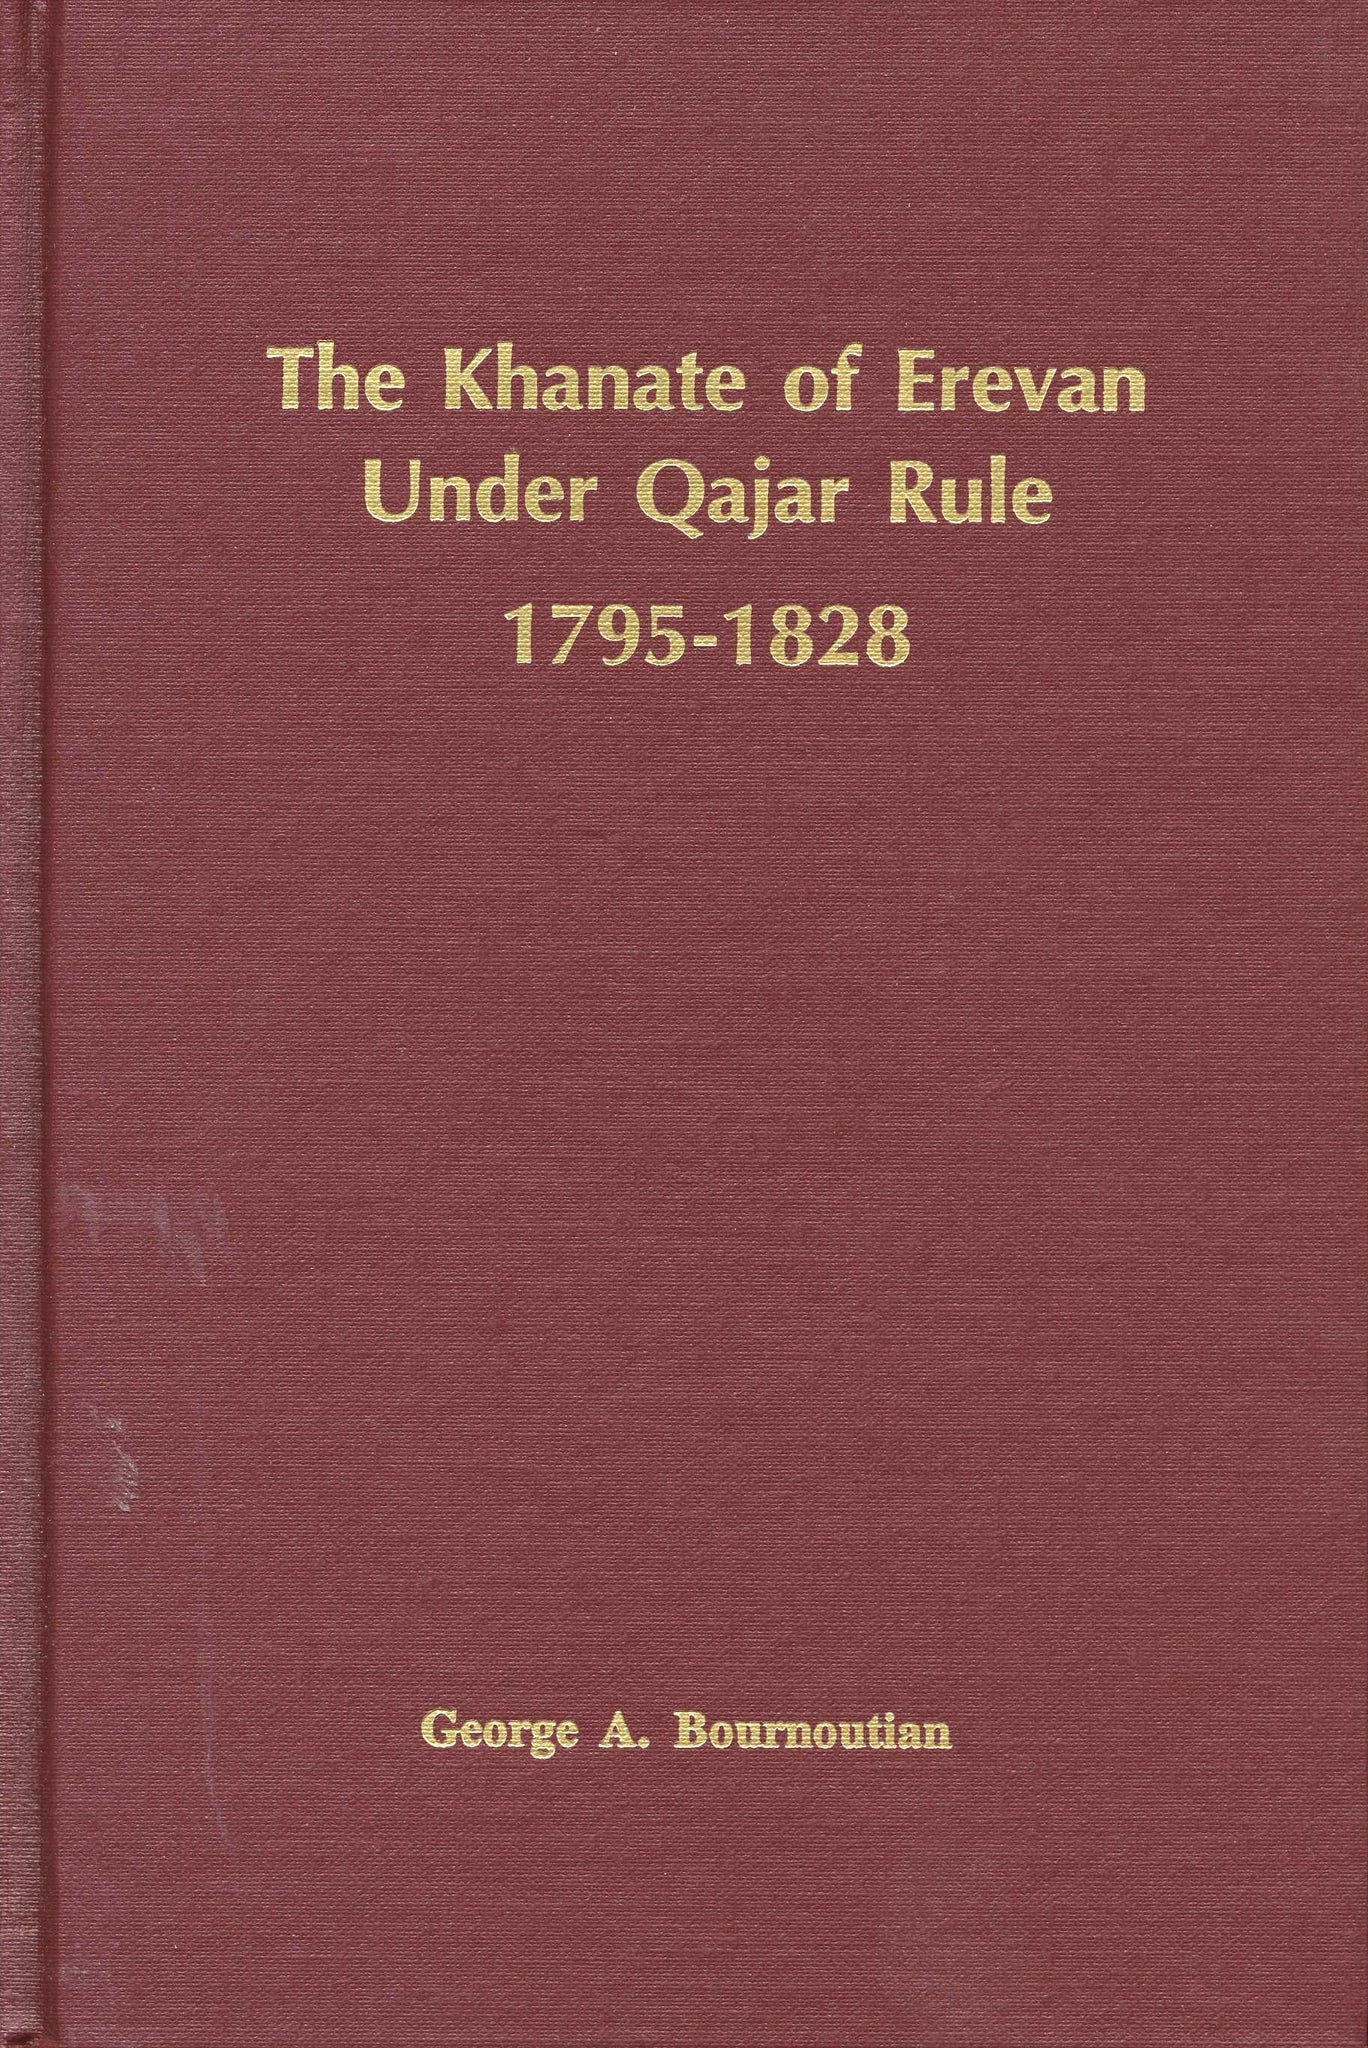 KHANATE OF EREVAN UNDER QAJAR RULE, THE: 1795-1828